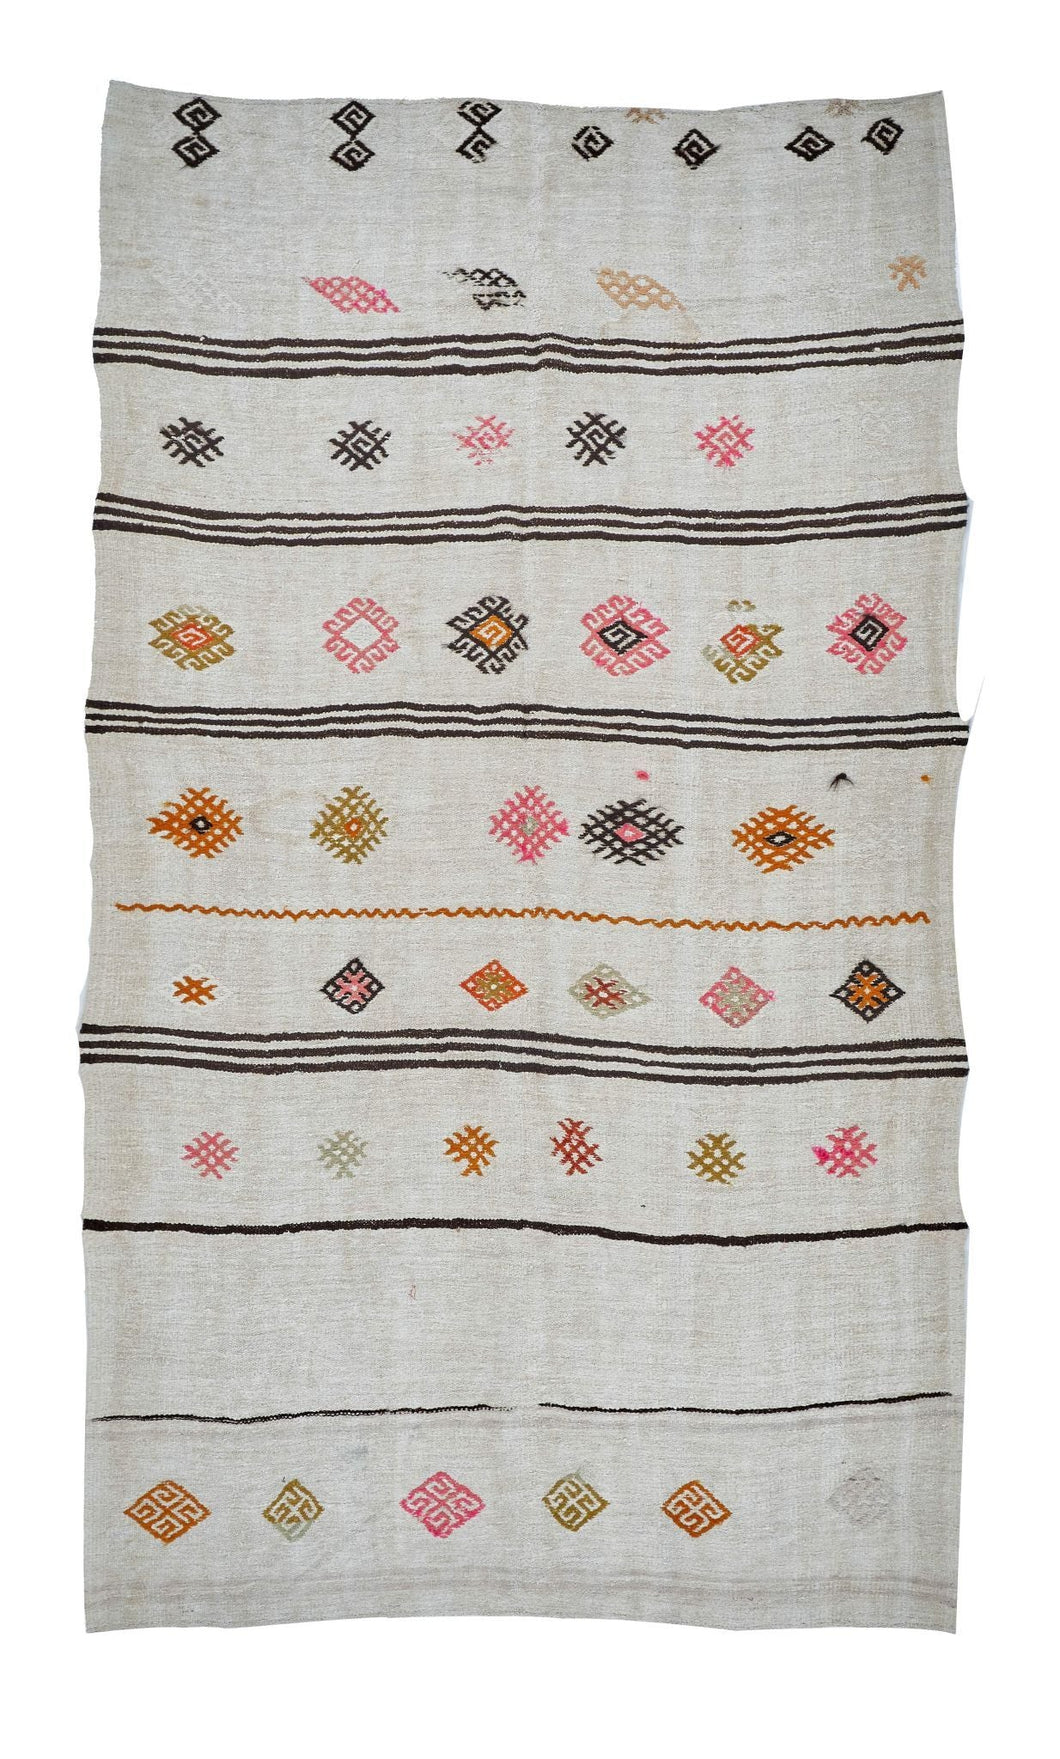 6x10 Colorful Vintage Turkish Area Rug-turkish_rugs-oriental_rugs-kilim_rugs-oushak_rugs